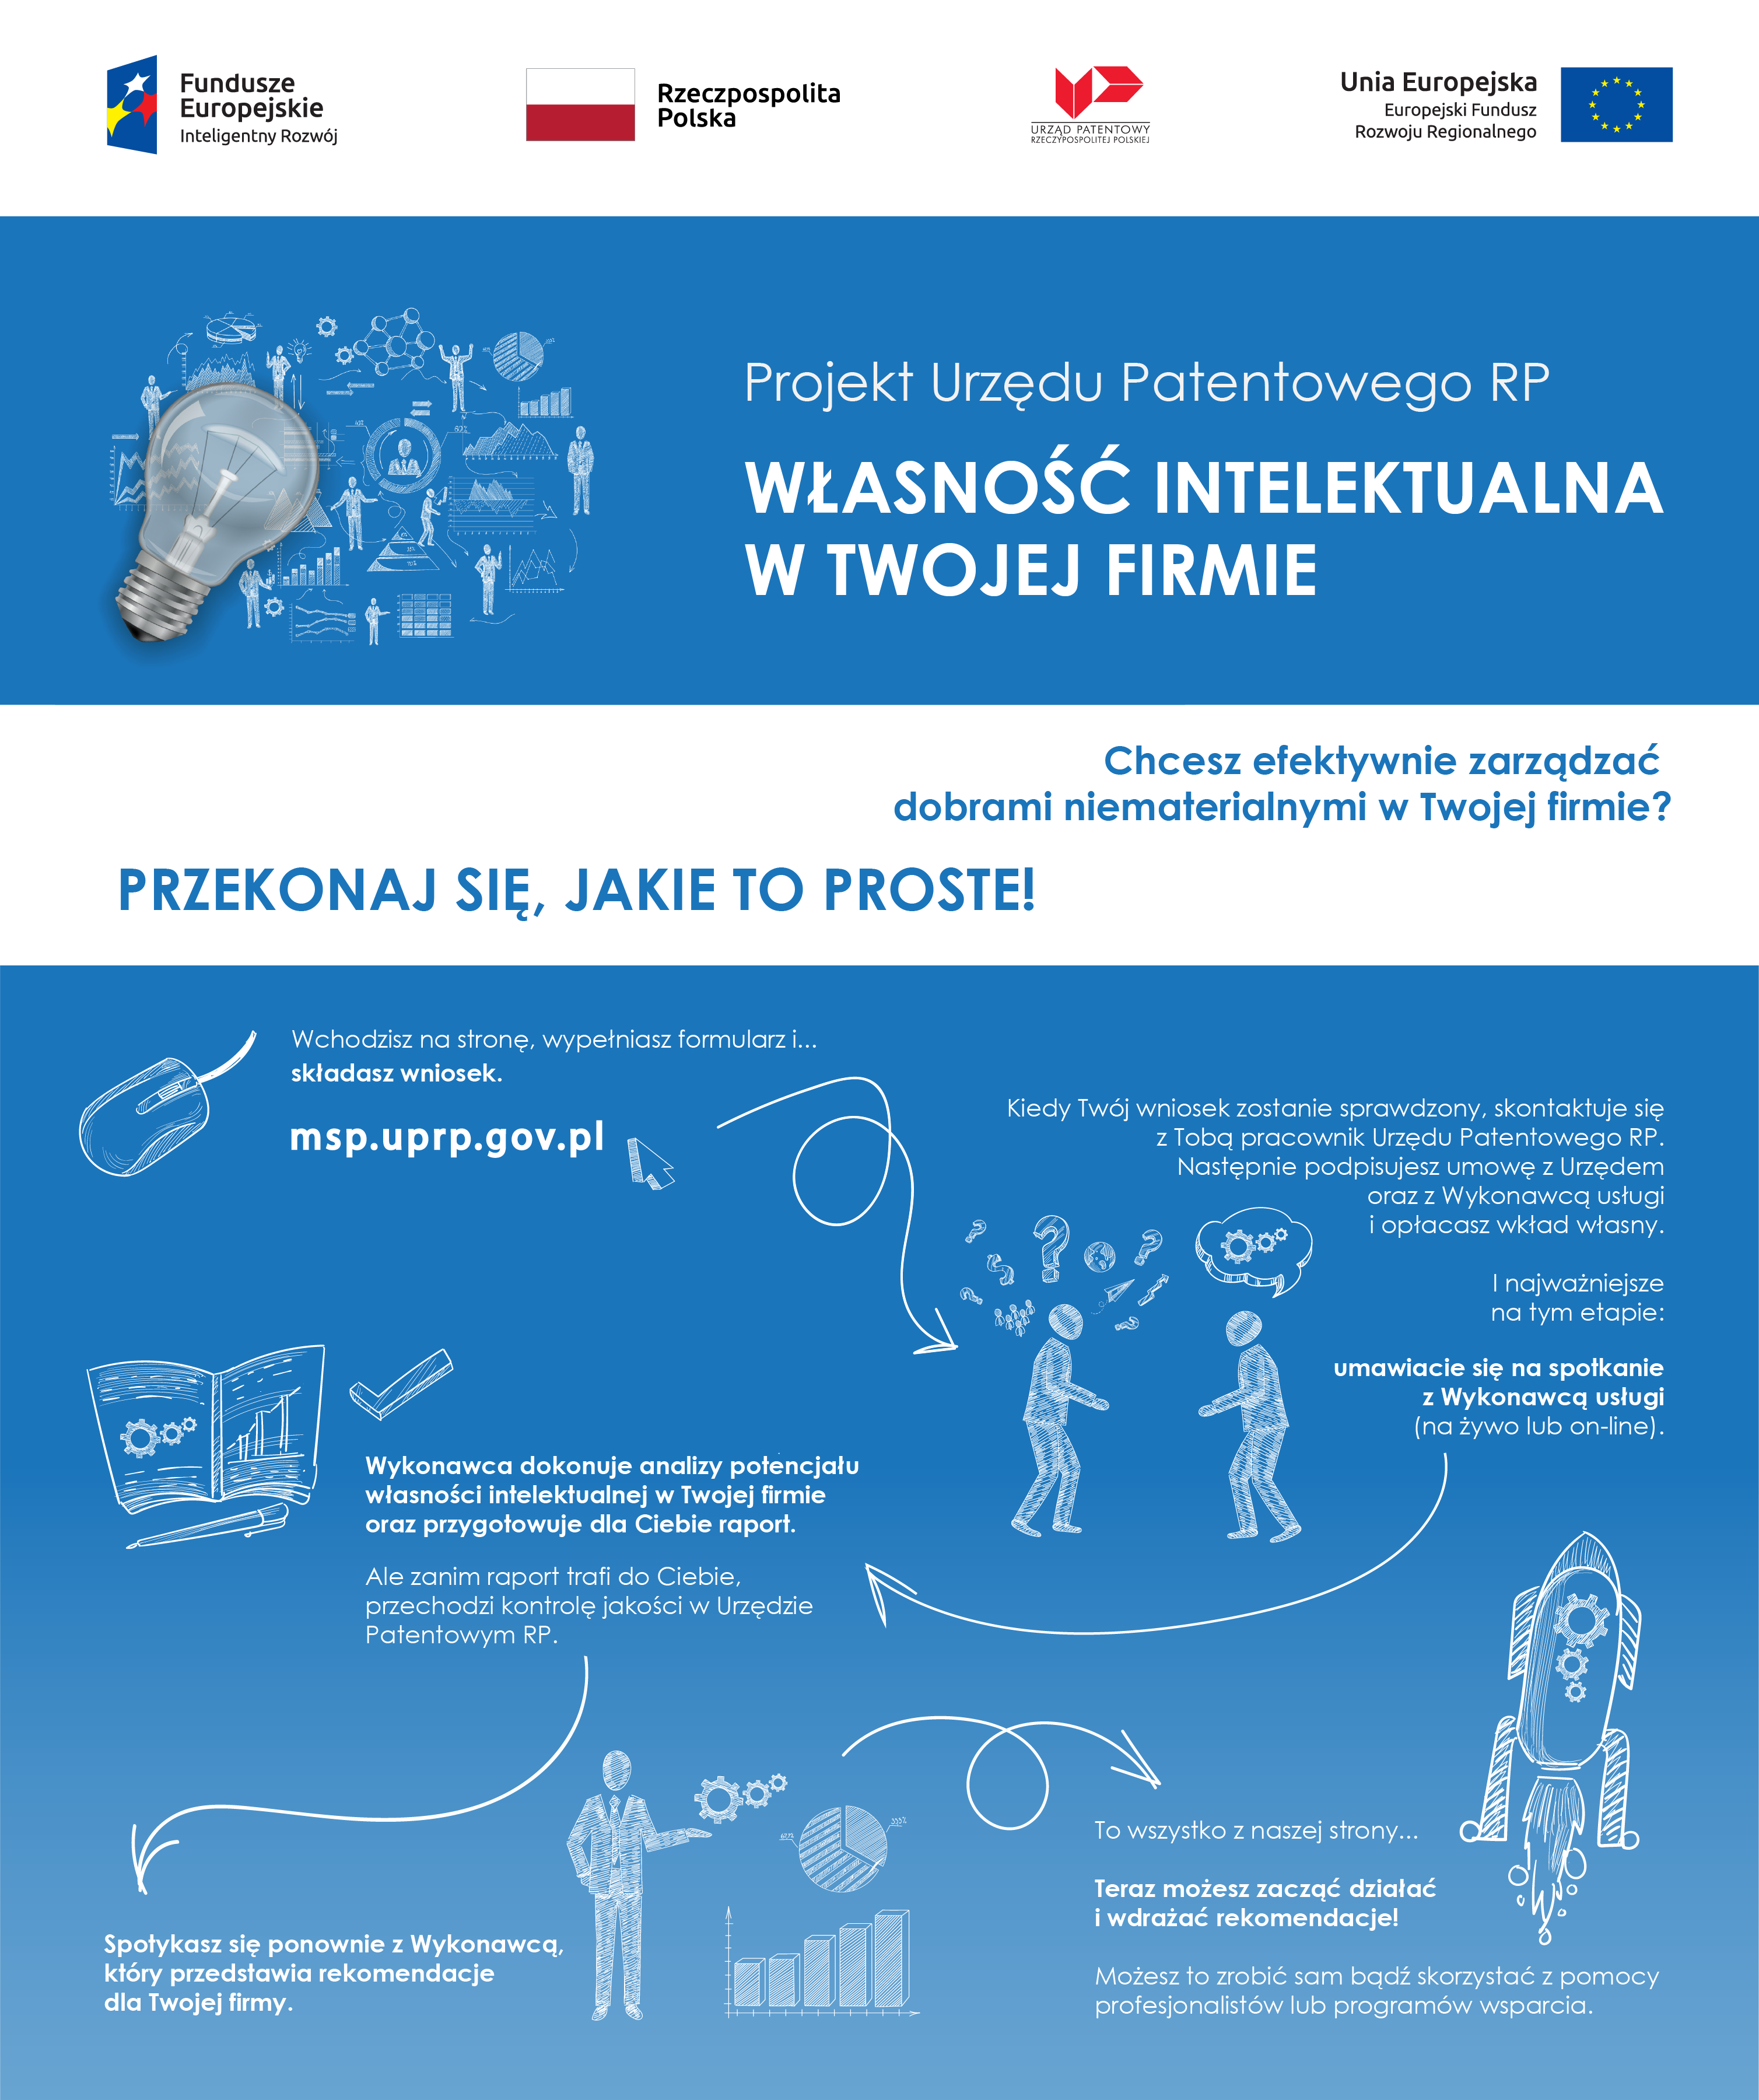 Projekt Urzędu Patentowego RP Własność intelektualna w twojej firmie z infografiką